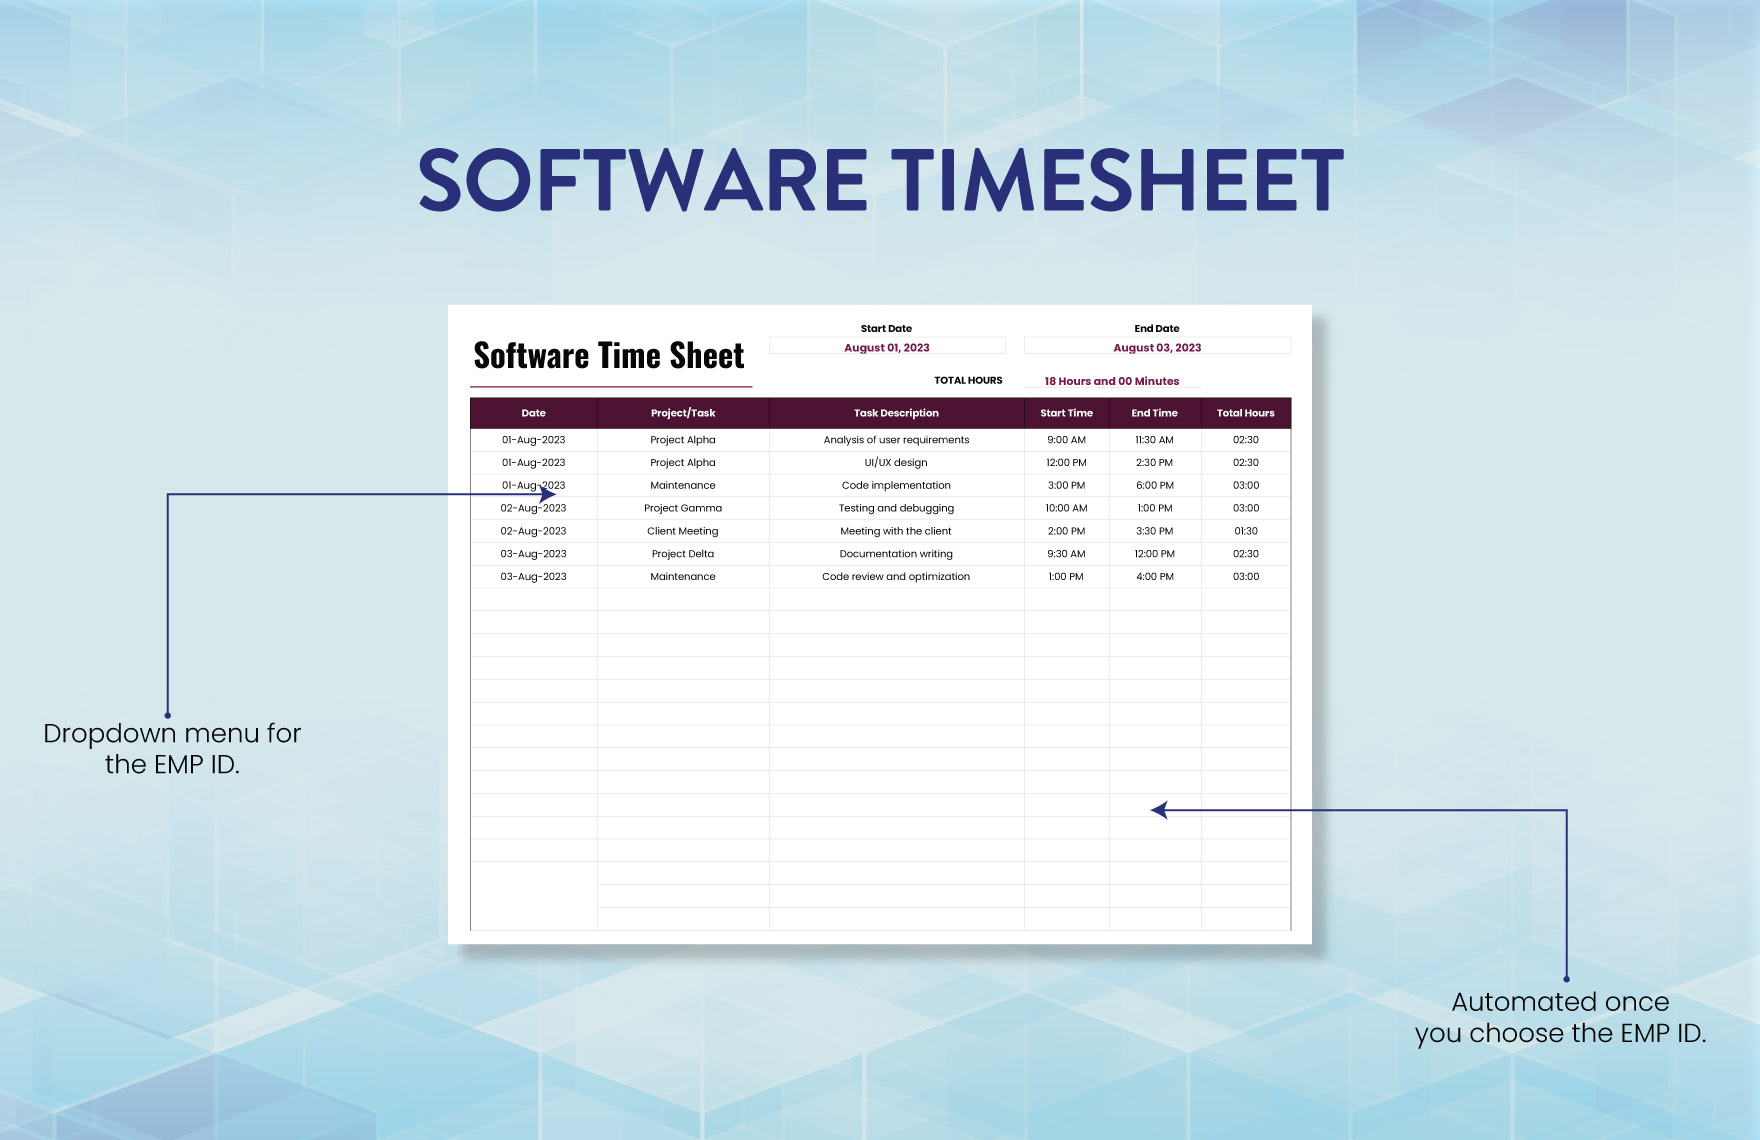 Software Timesheet Template